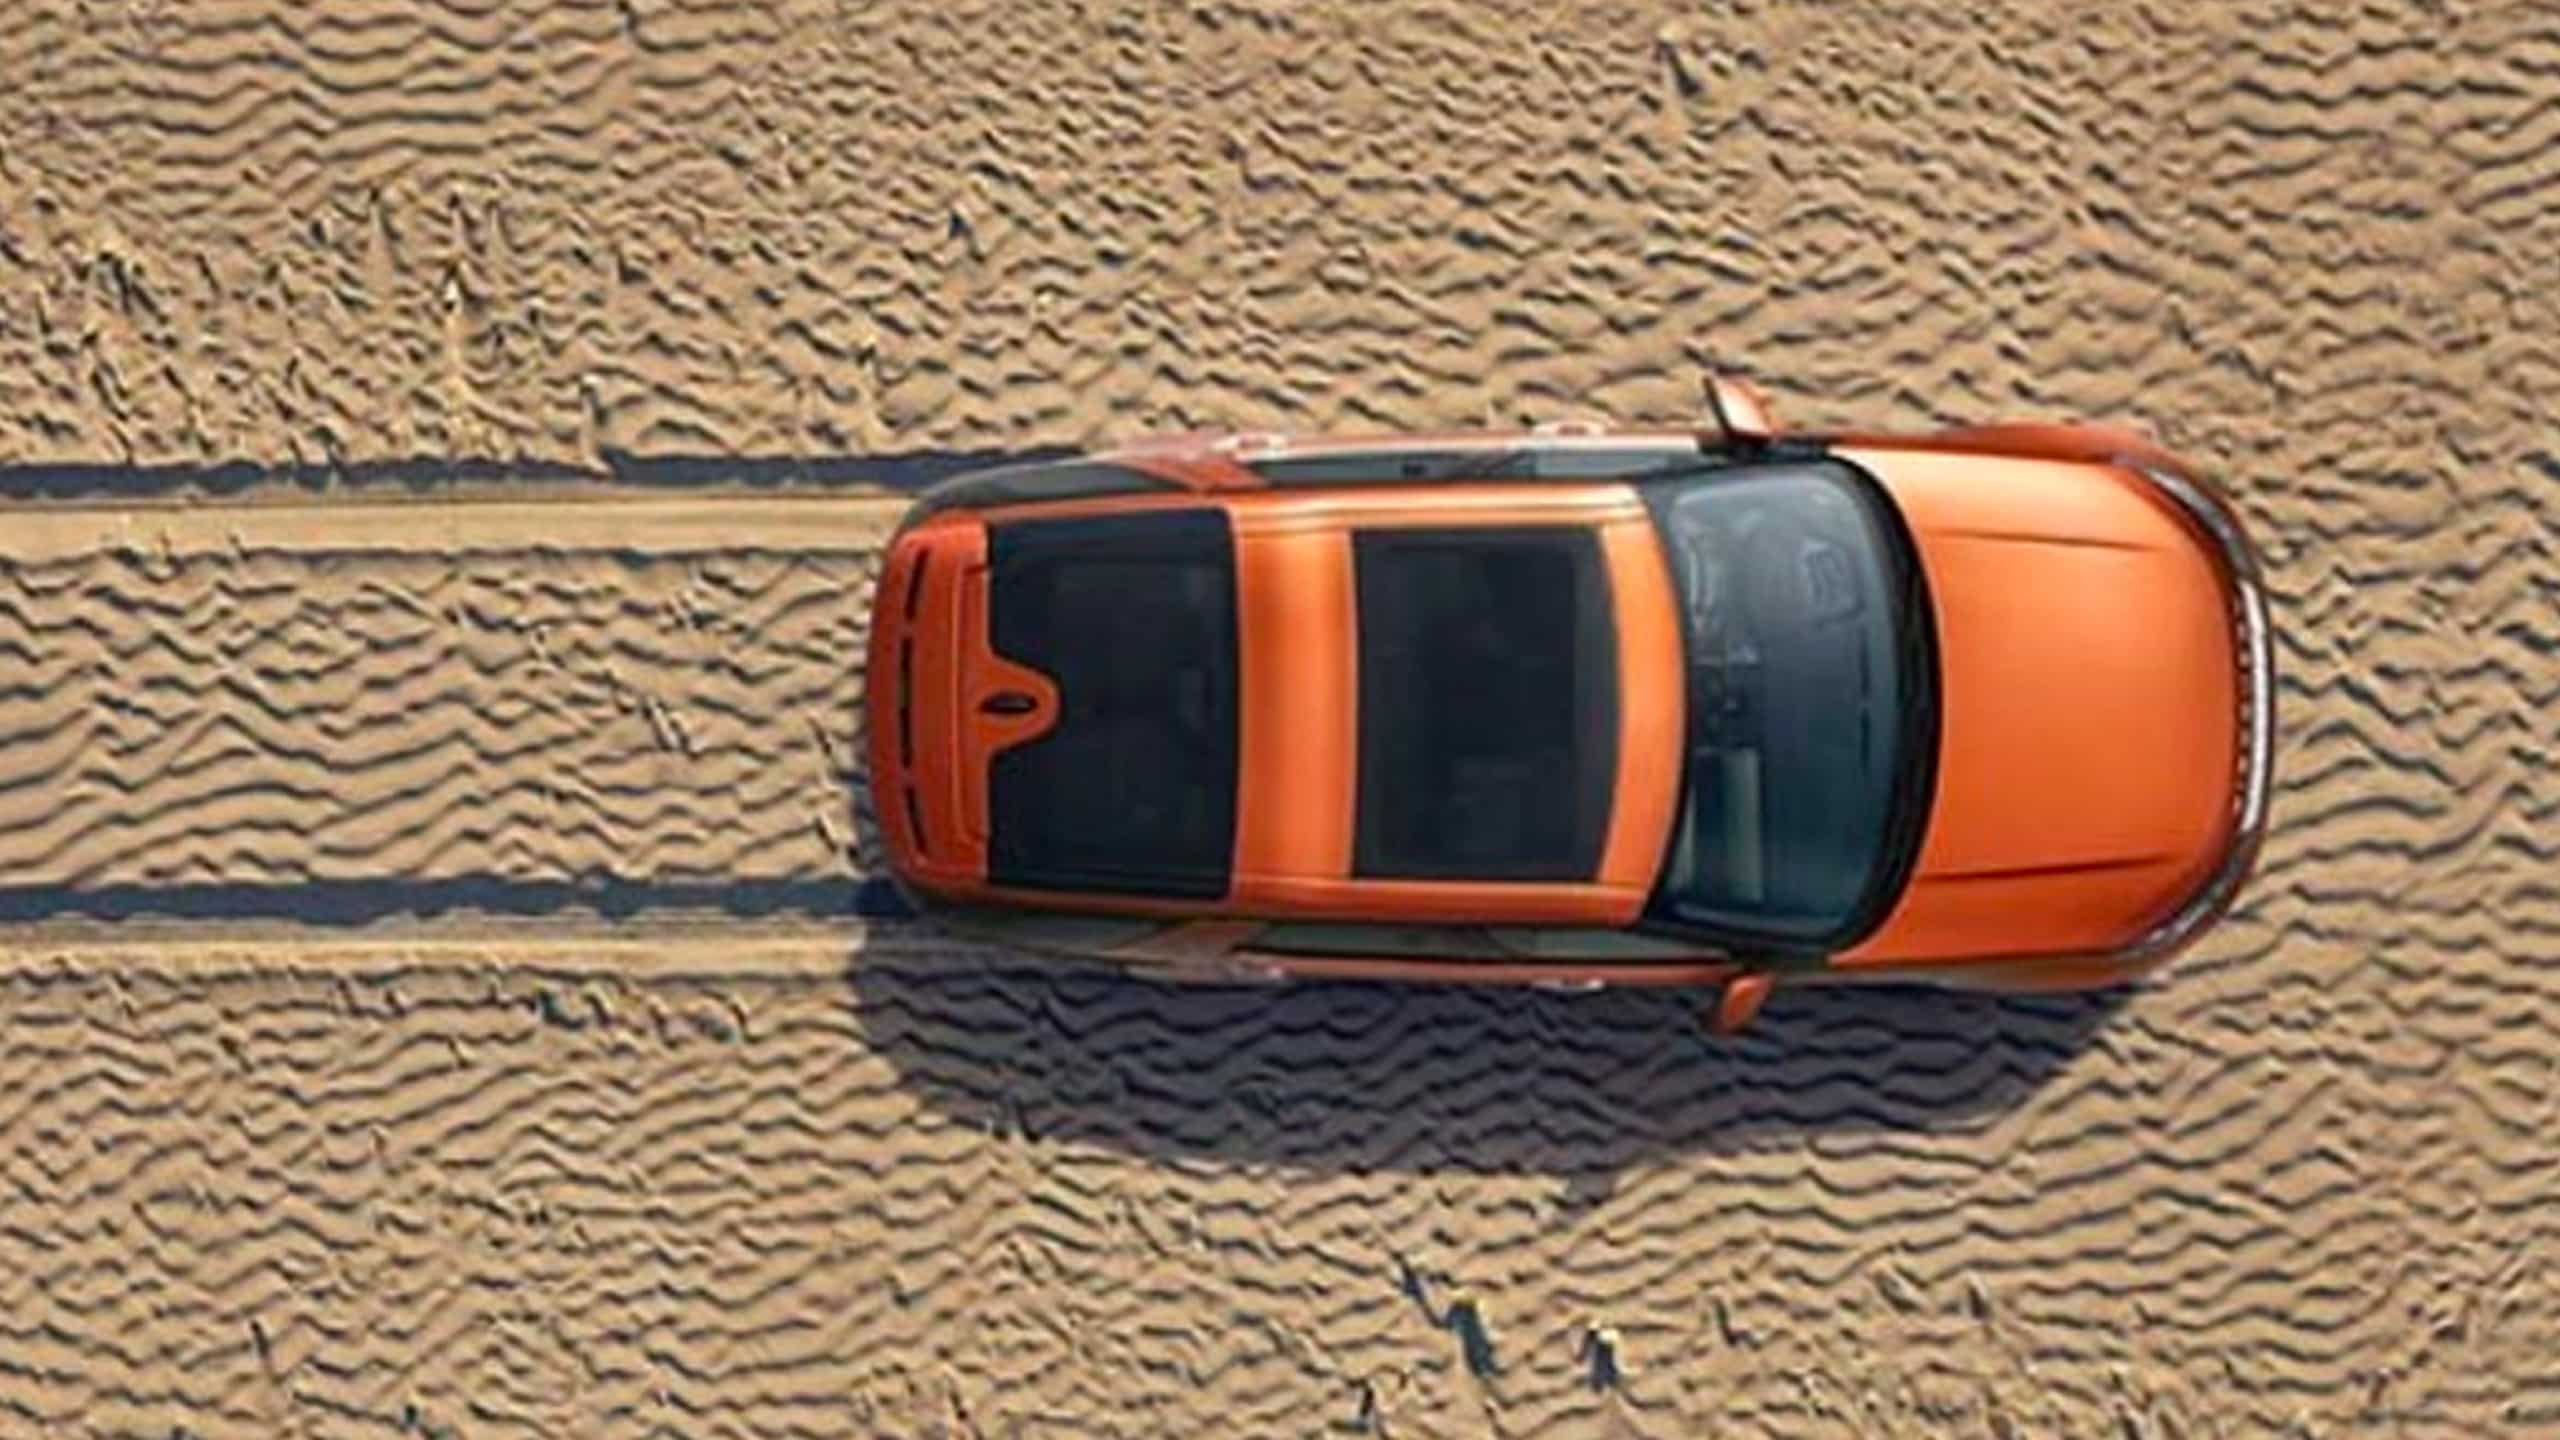 Range Rover moving on Off-road desert safari 